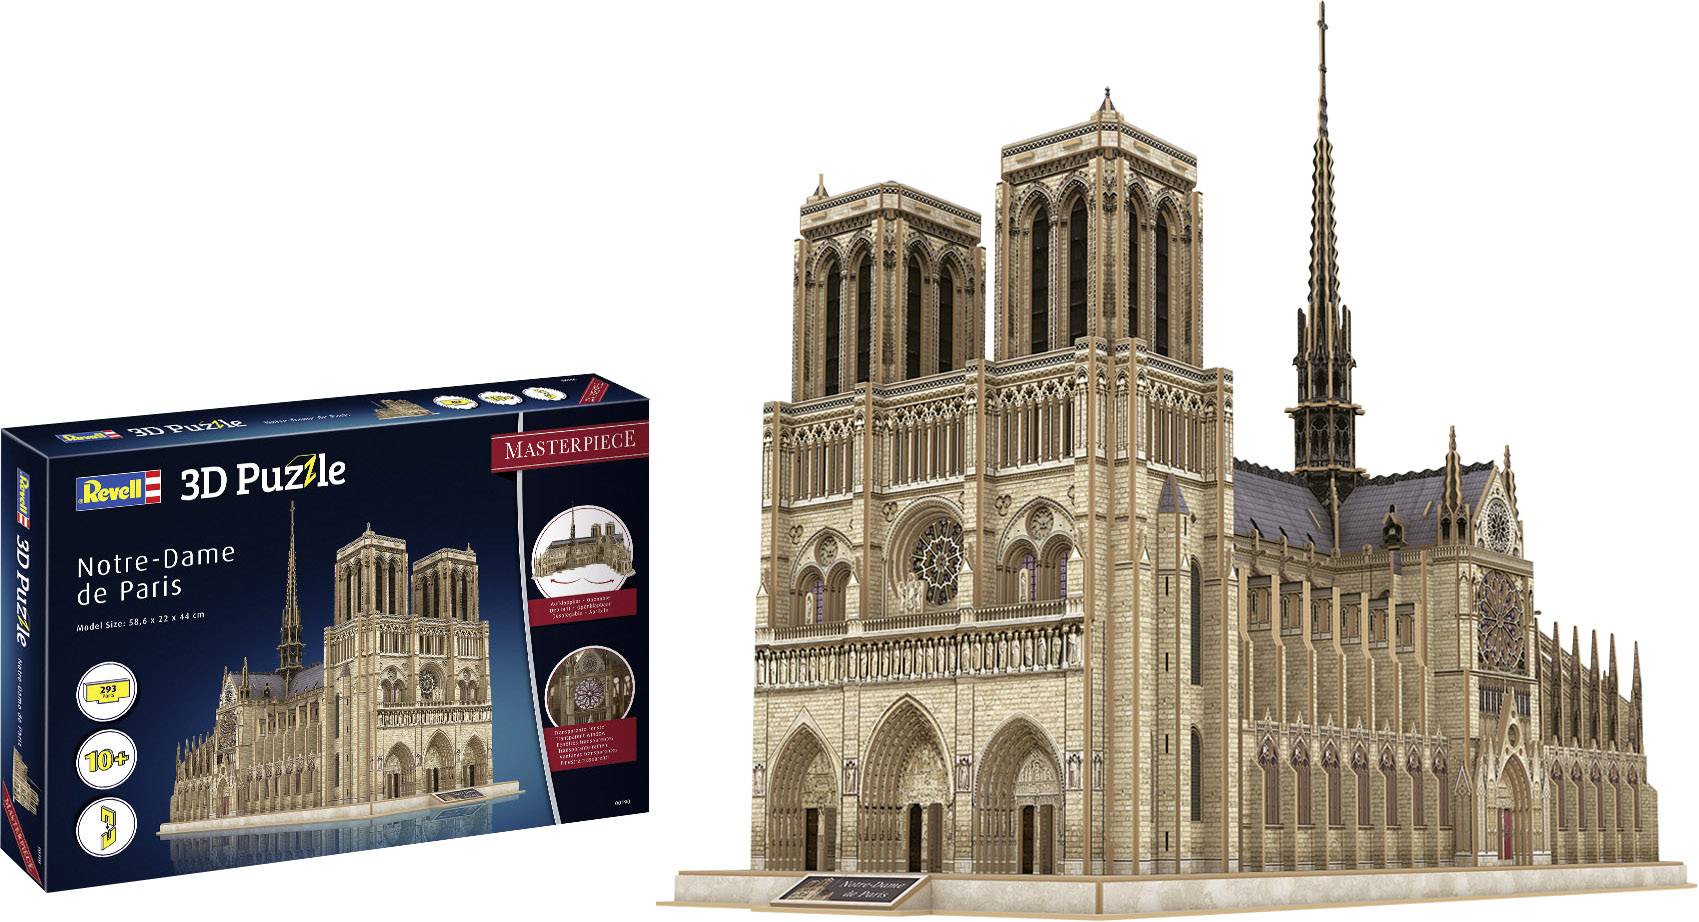 Revell 3D Puzzle Notre Dame de Paris Masterpiece